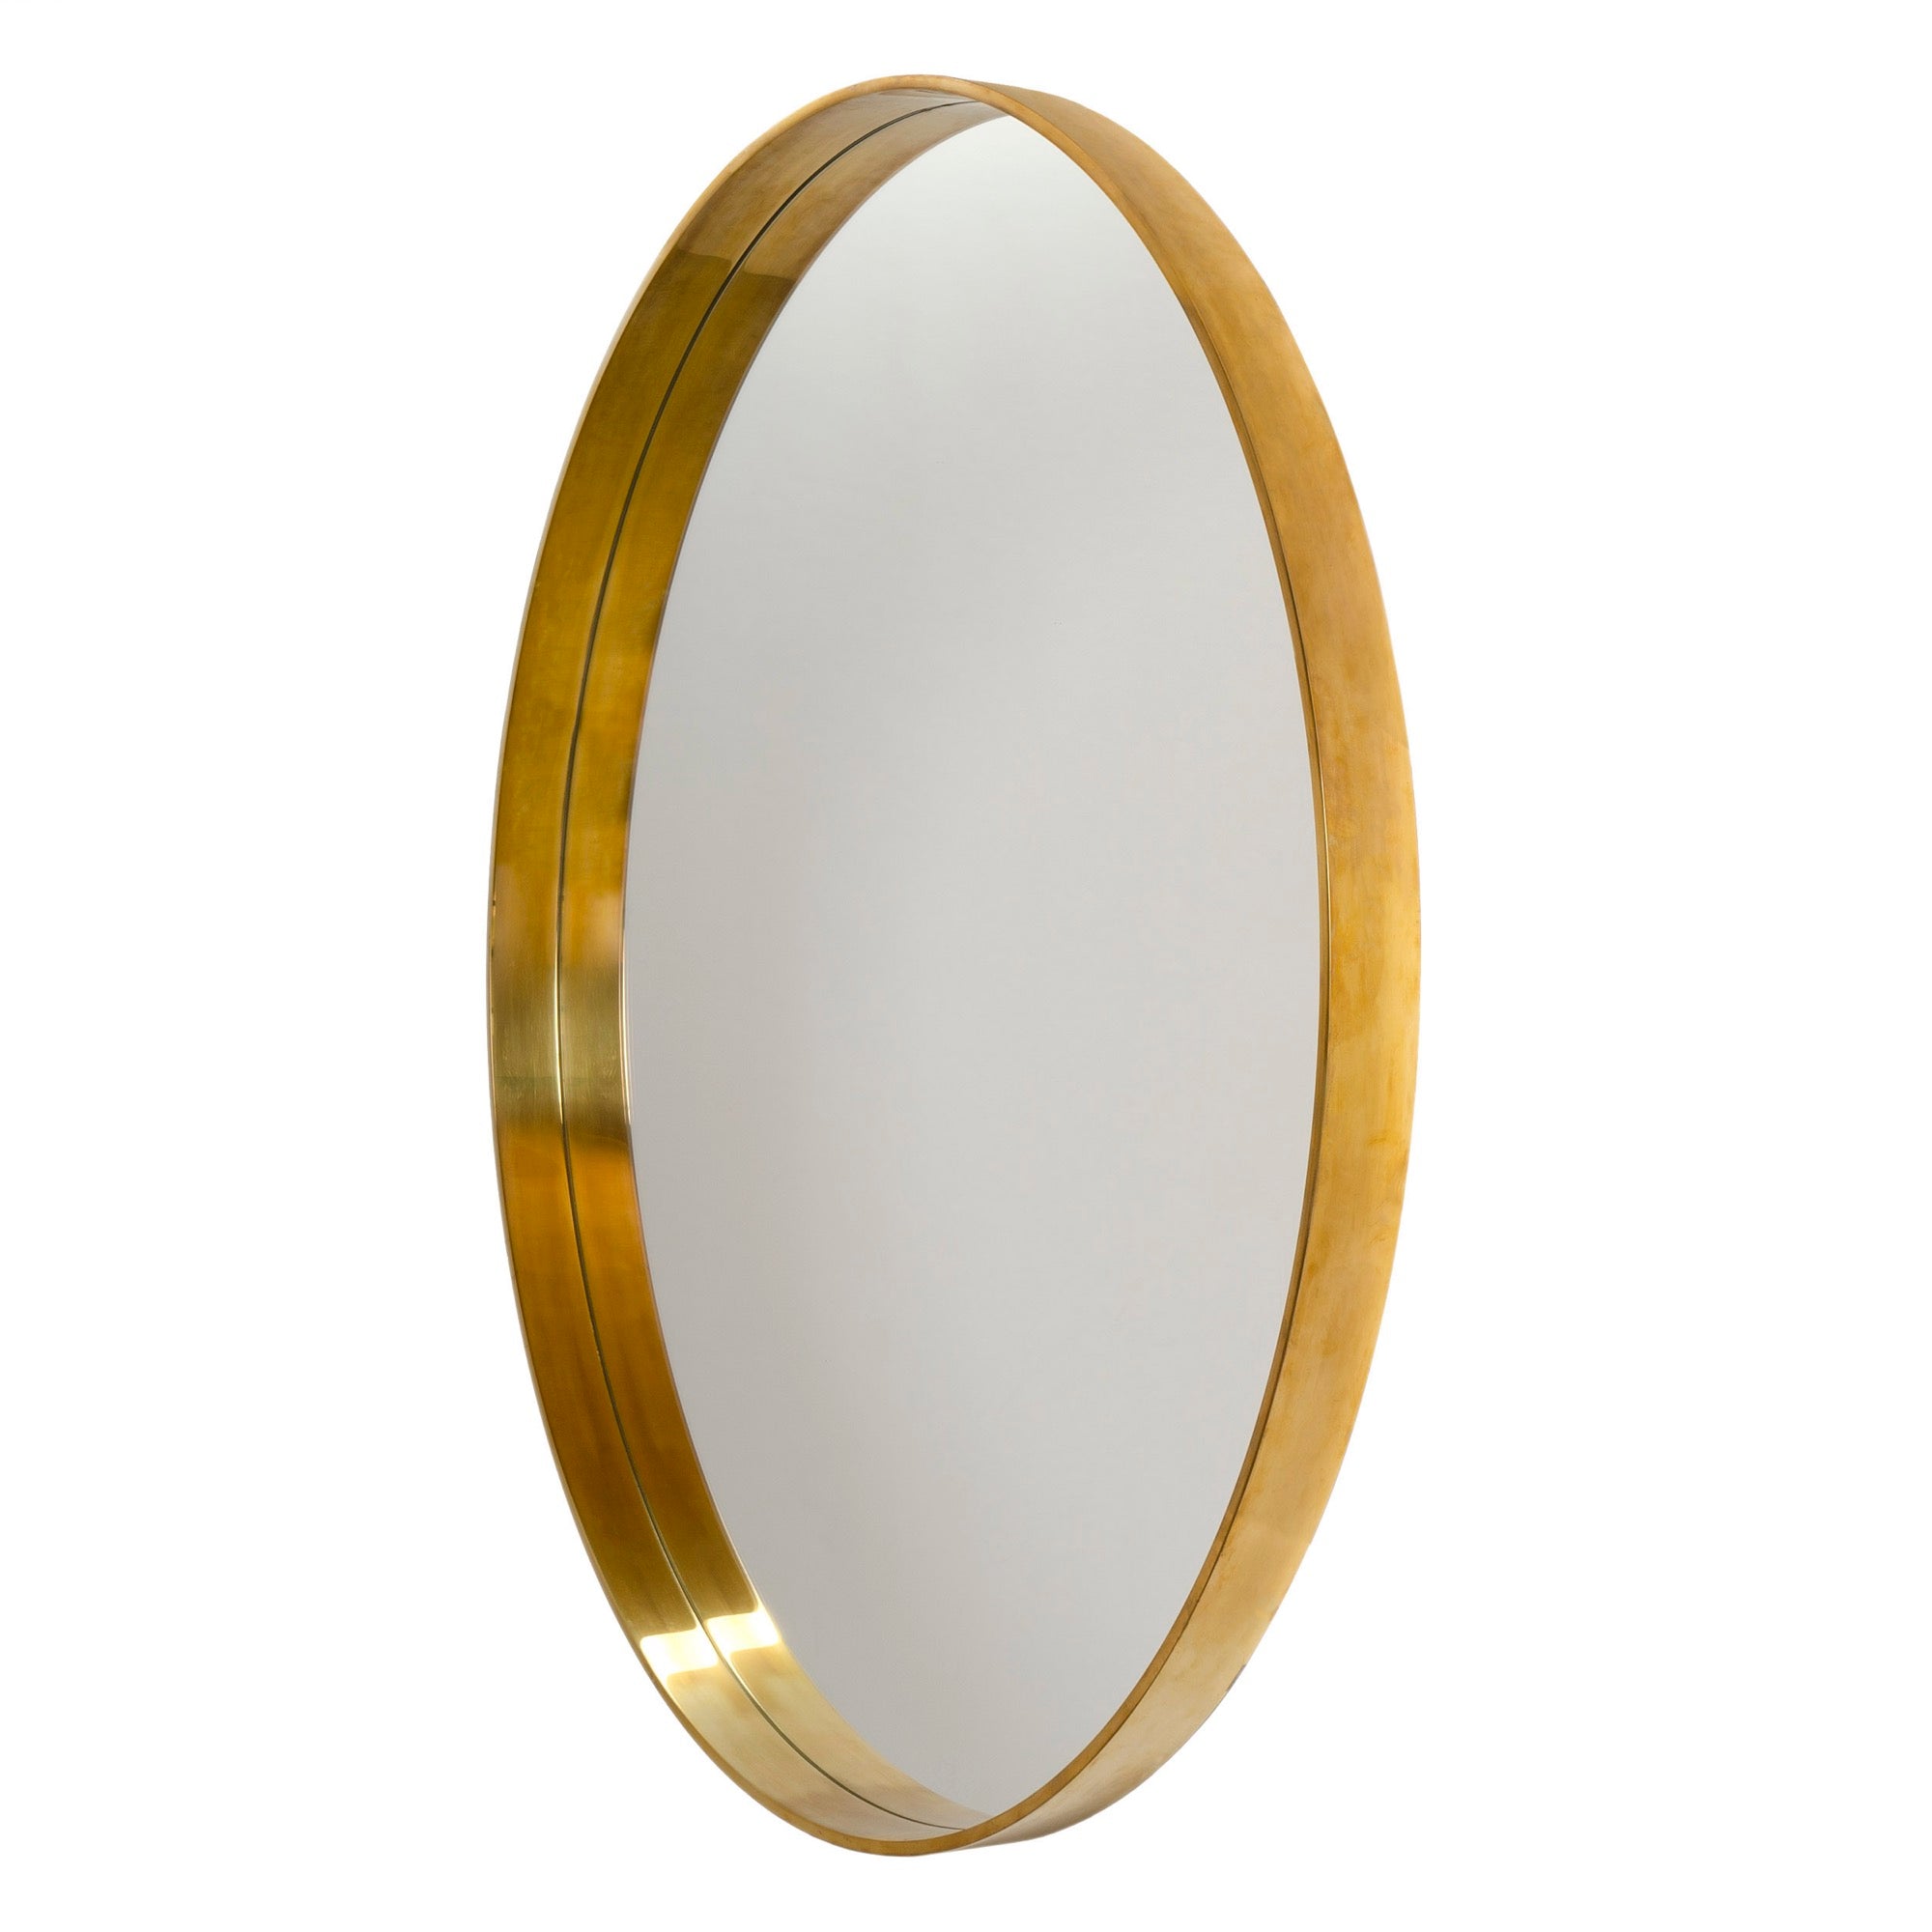 Original 55" Minimalist Round Mirror in Bronze by WYETH, Made to Order